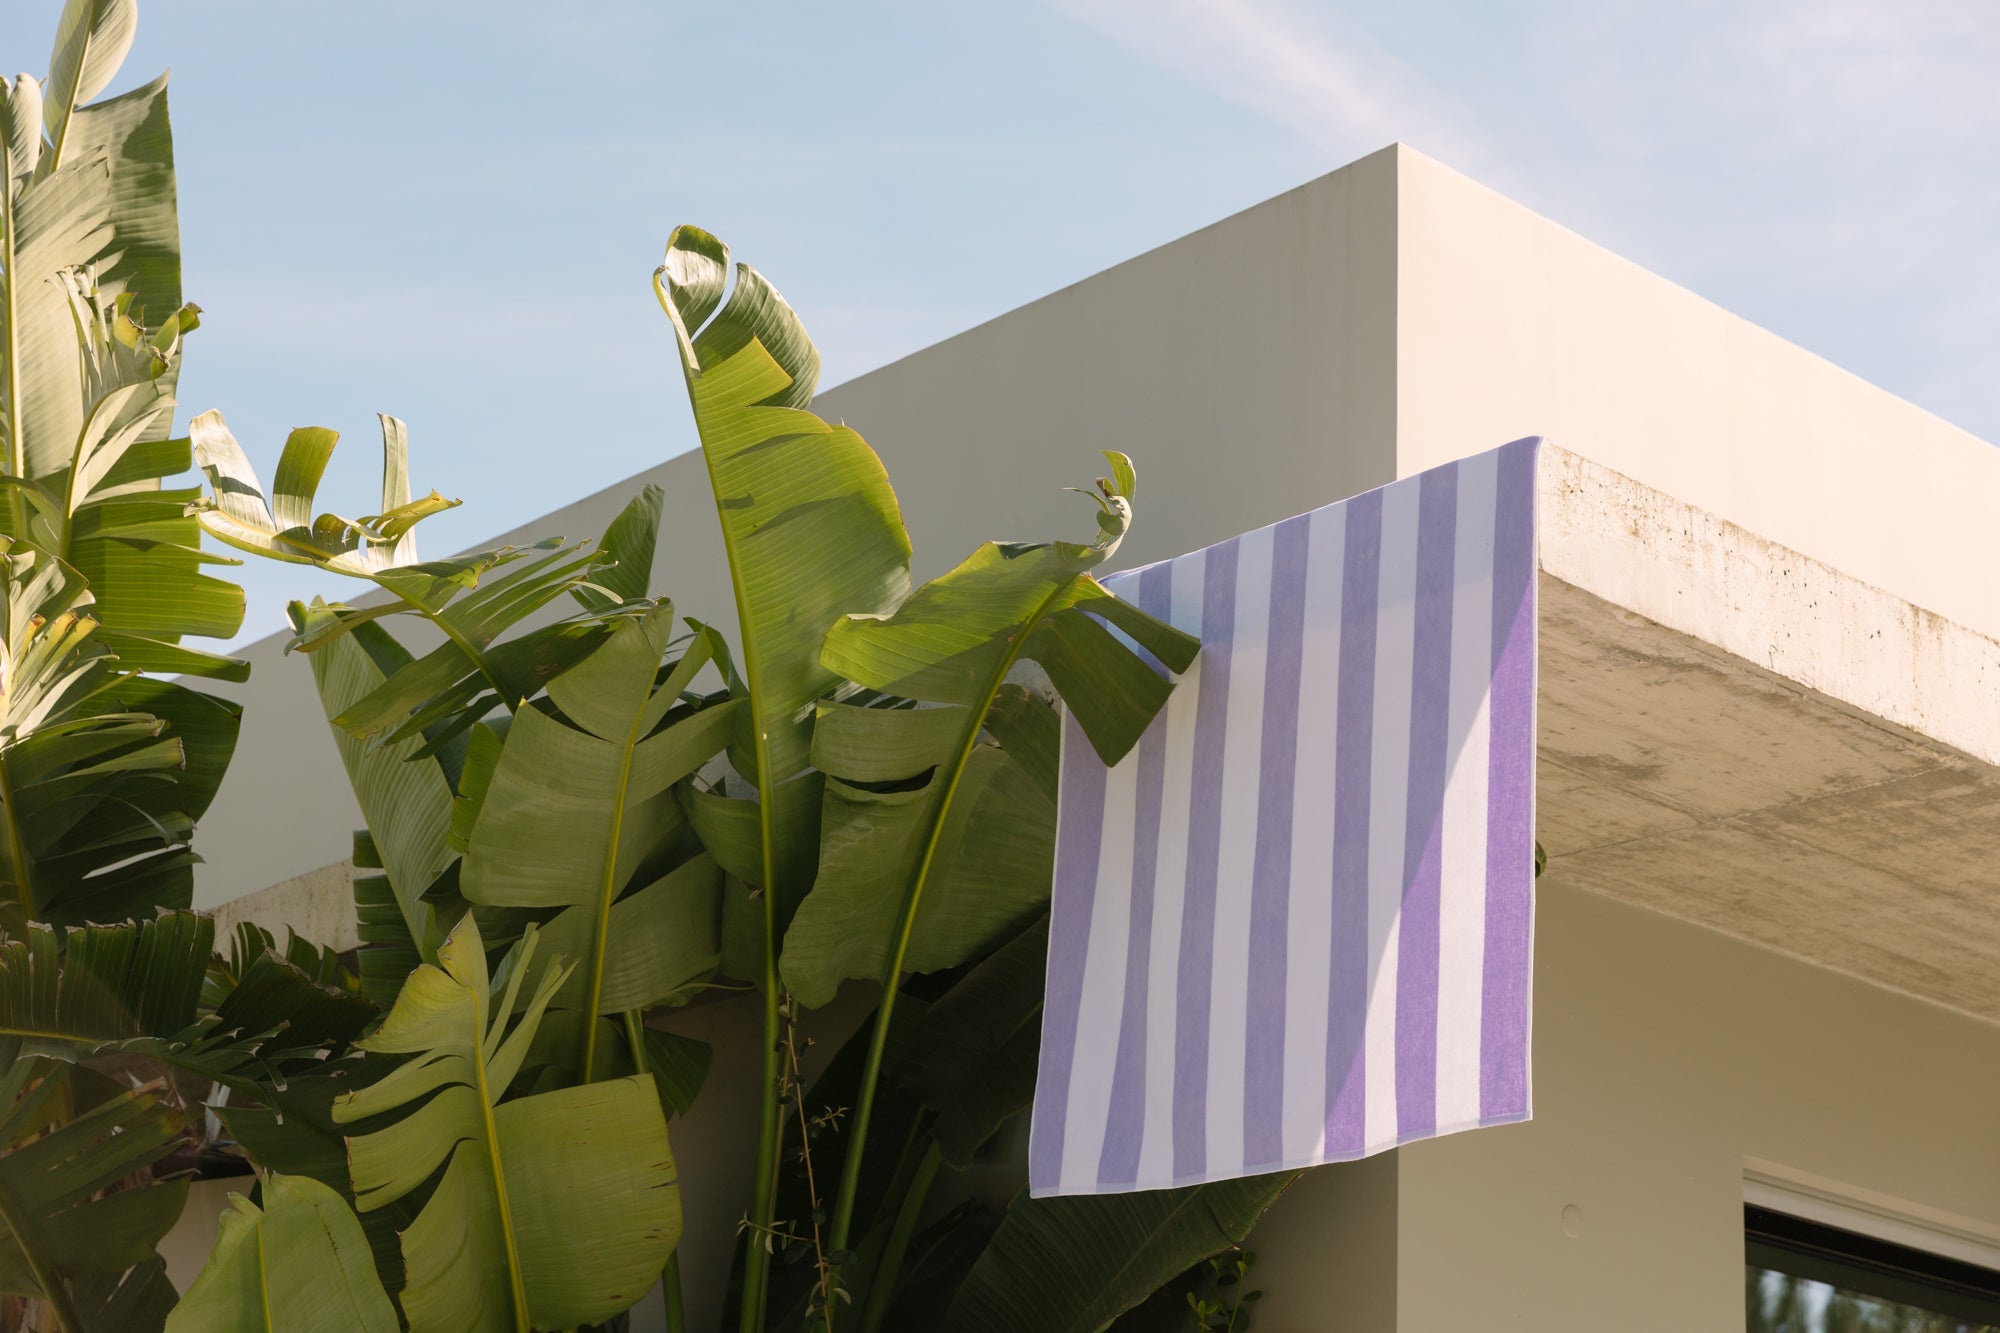 torres-novas-gibalta-beach-towels-vertical-stripes-product-lavender-3_e5551400-8ce3-4243-89ec-a28a8b52ec78.jpg